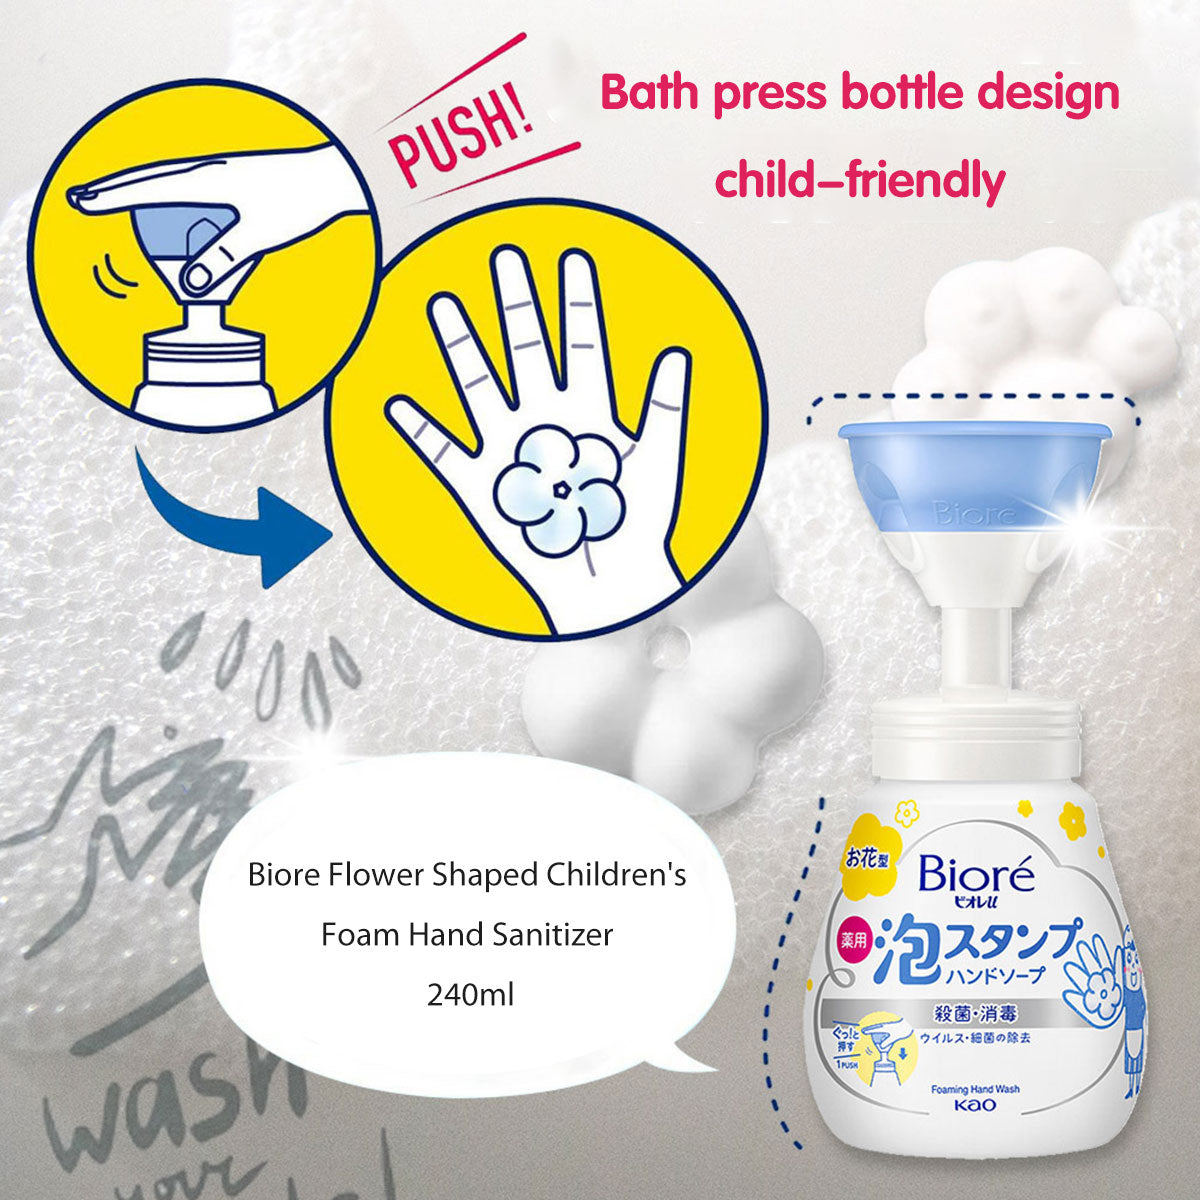 Biore Flower Shaped Children's Foam Hand Sanitizer 240ml